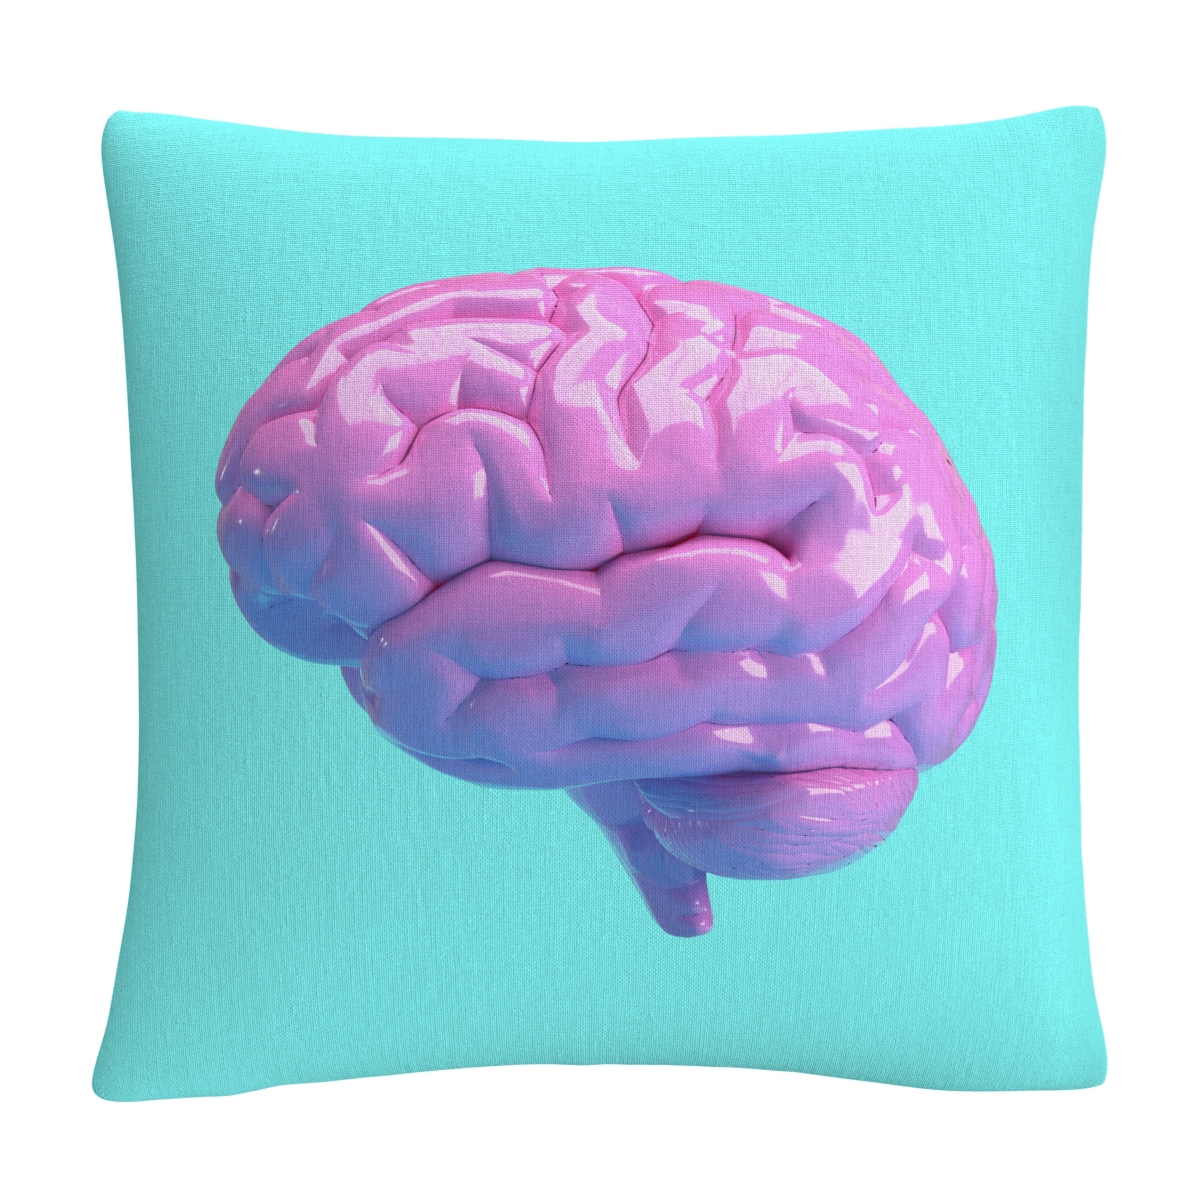 Abc Modern 3D Pink Brain Decorative Pillow, 16 x 16